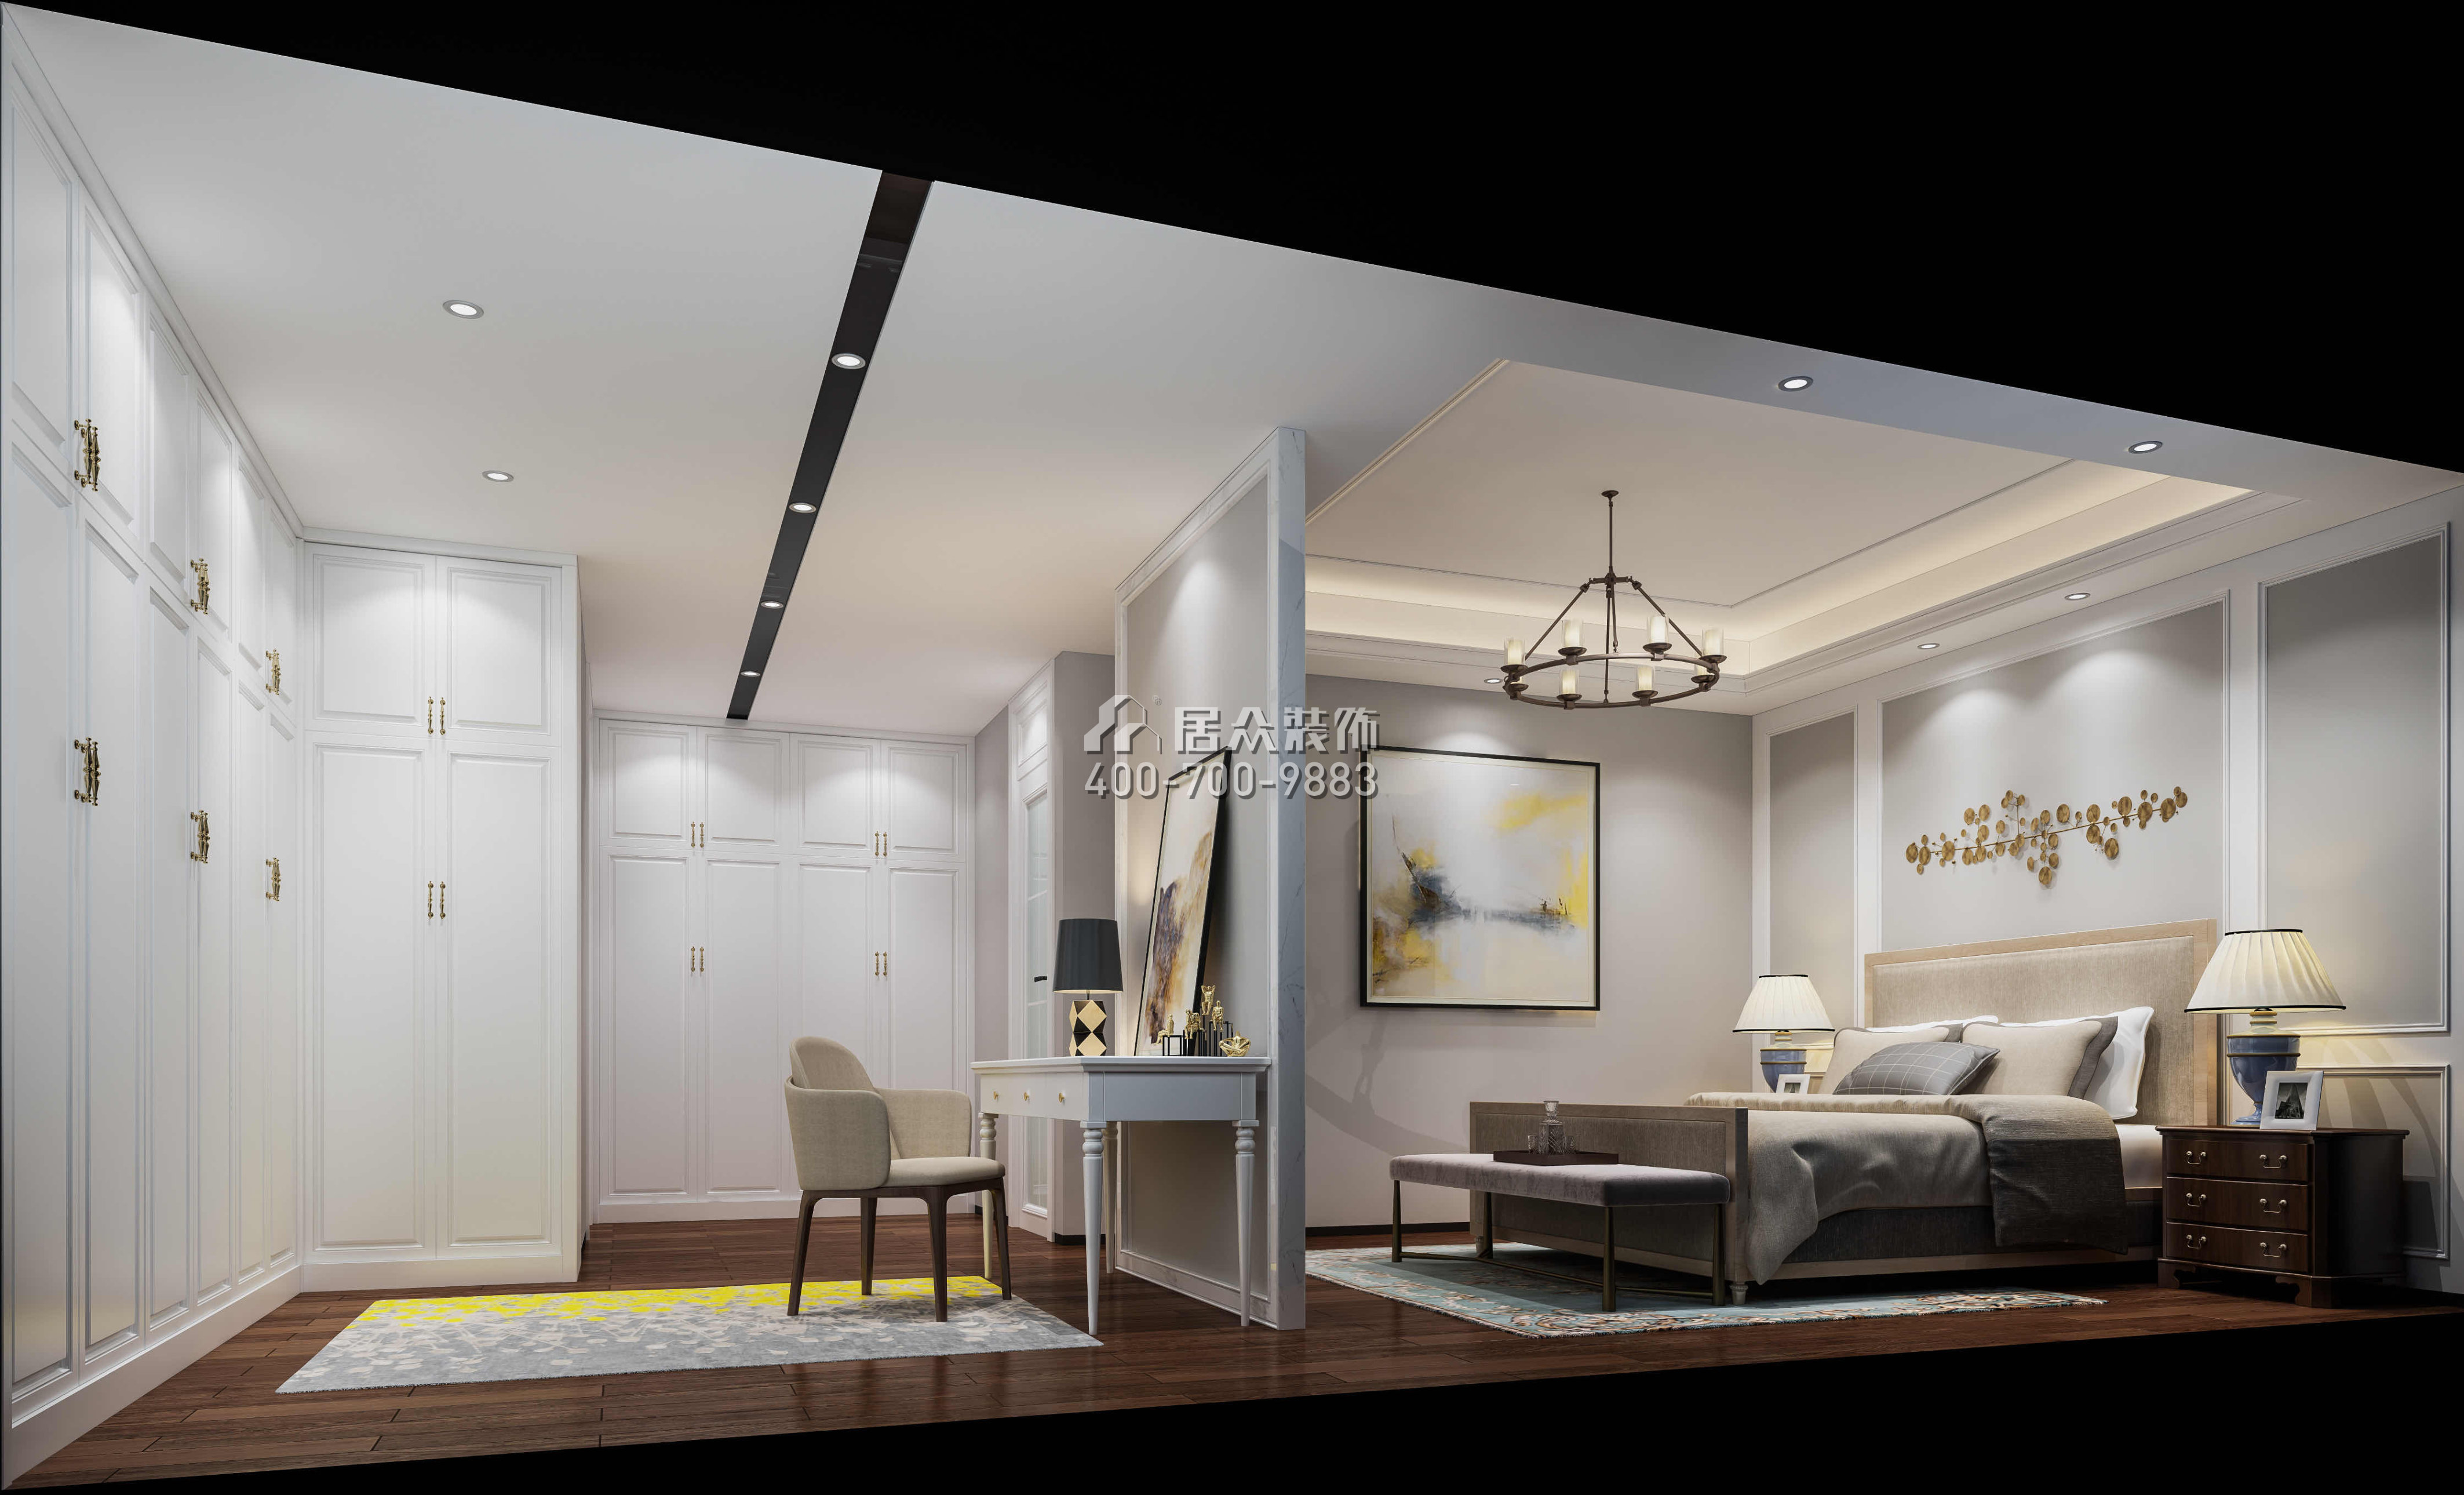 中信紅樹灣220平方米現代簡約風格平層戶型臥室裝修效果圖